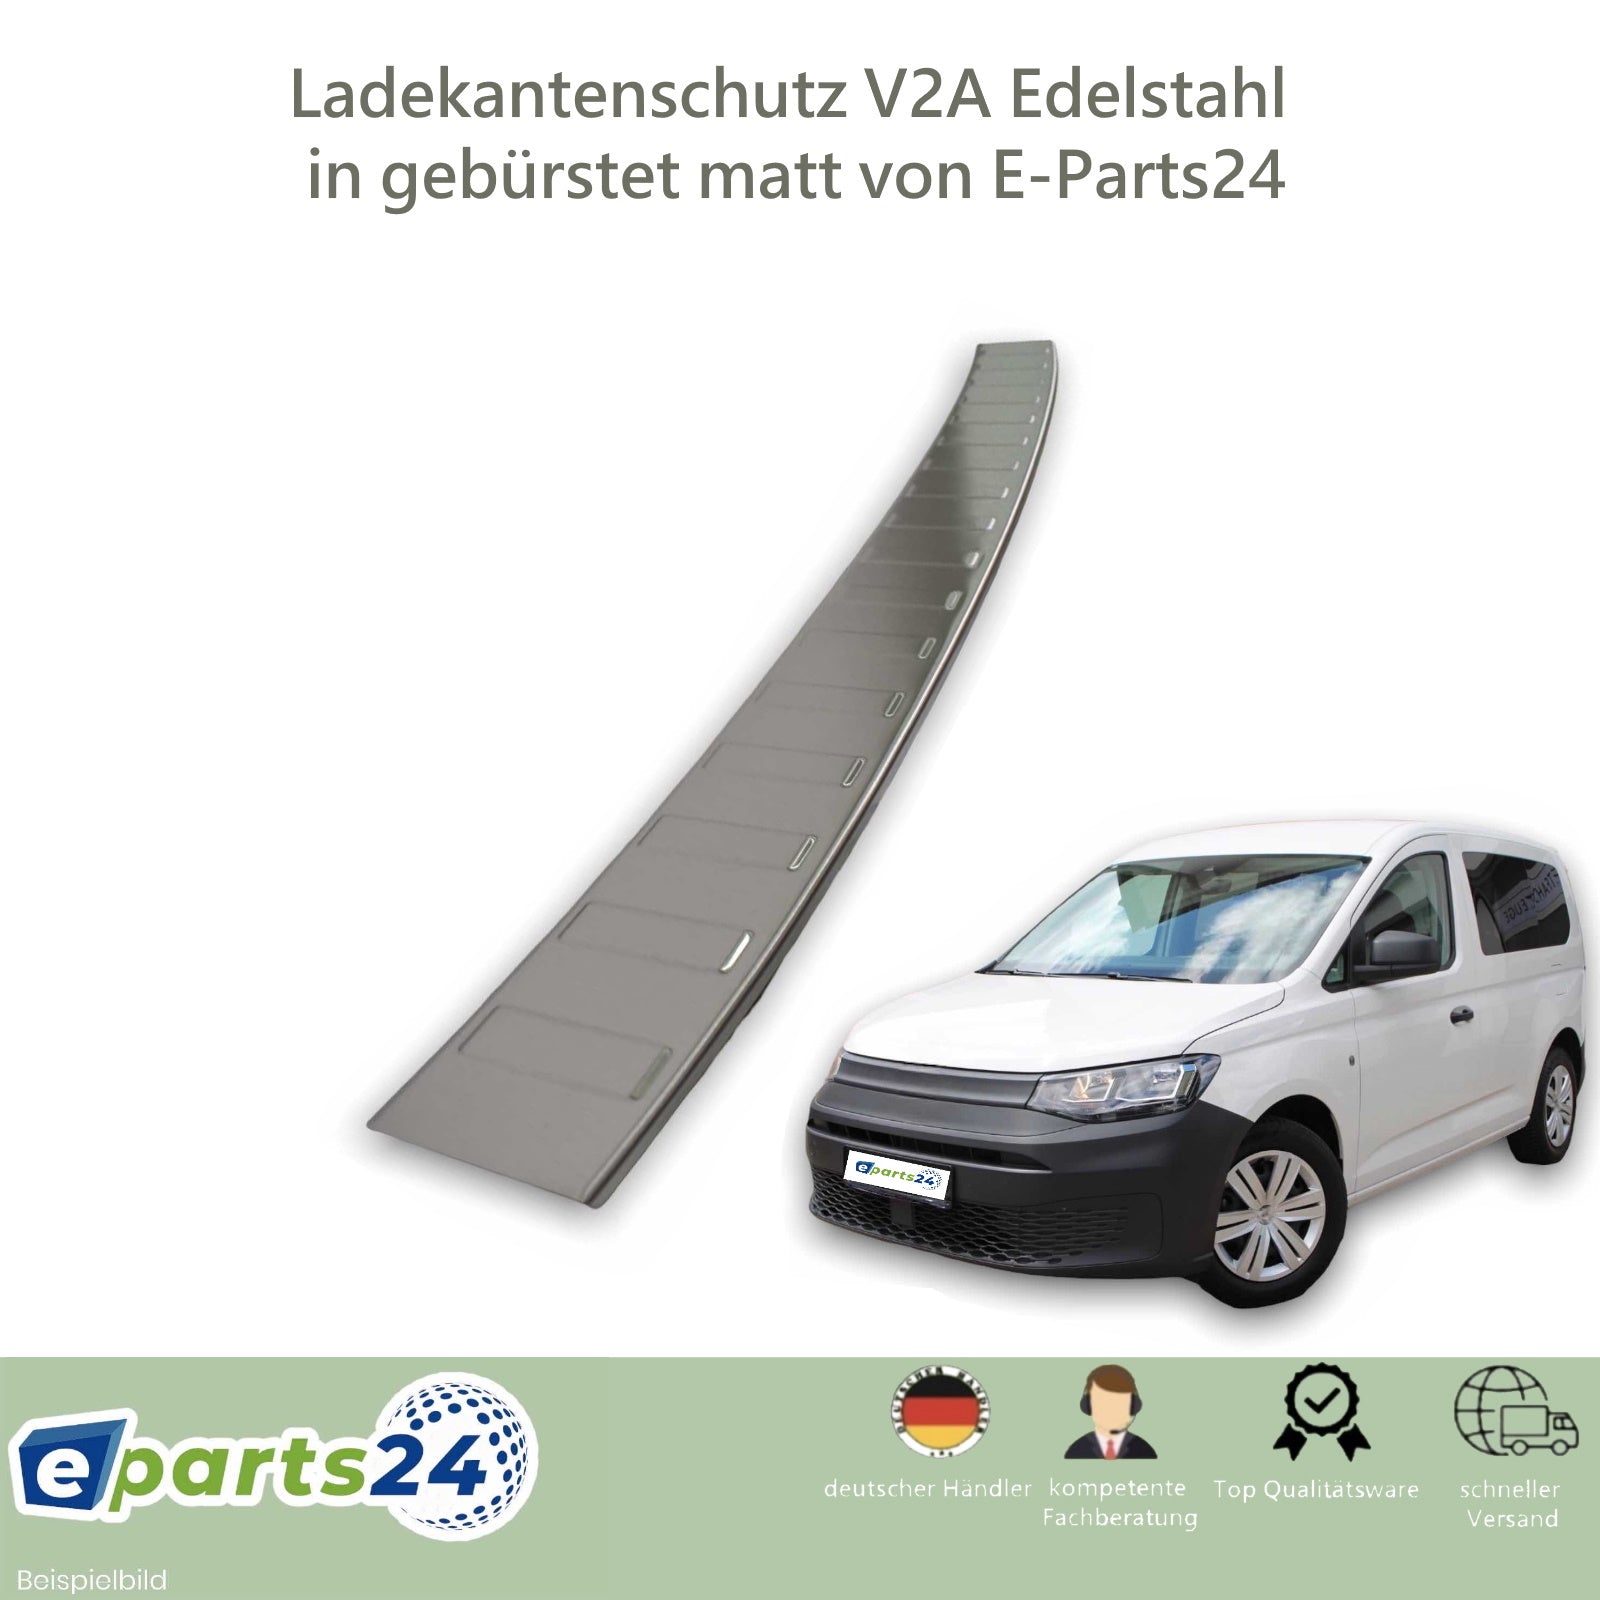 Ladekantenschutz Heckschutz für VW Caddy V 5 ab 2020- Edelstahl gebürstet  mit Abkantung E-Parts24